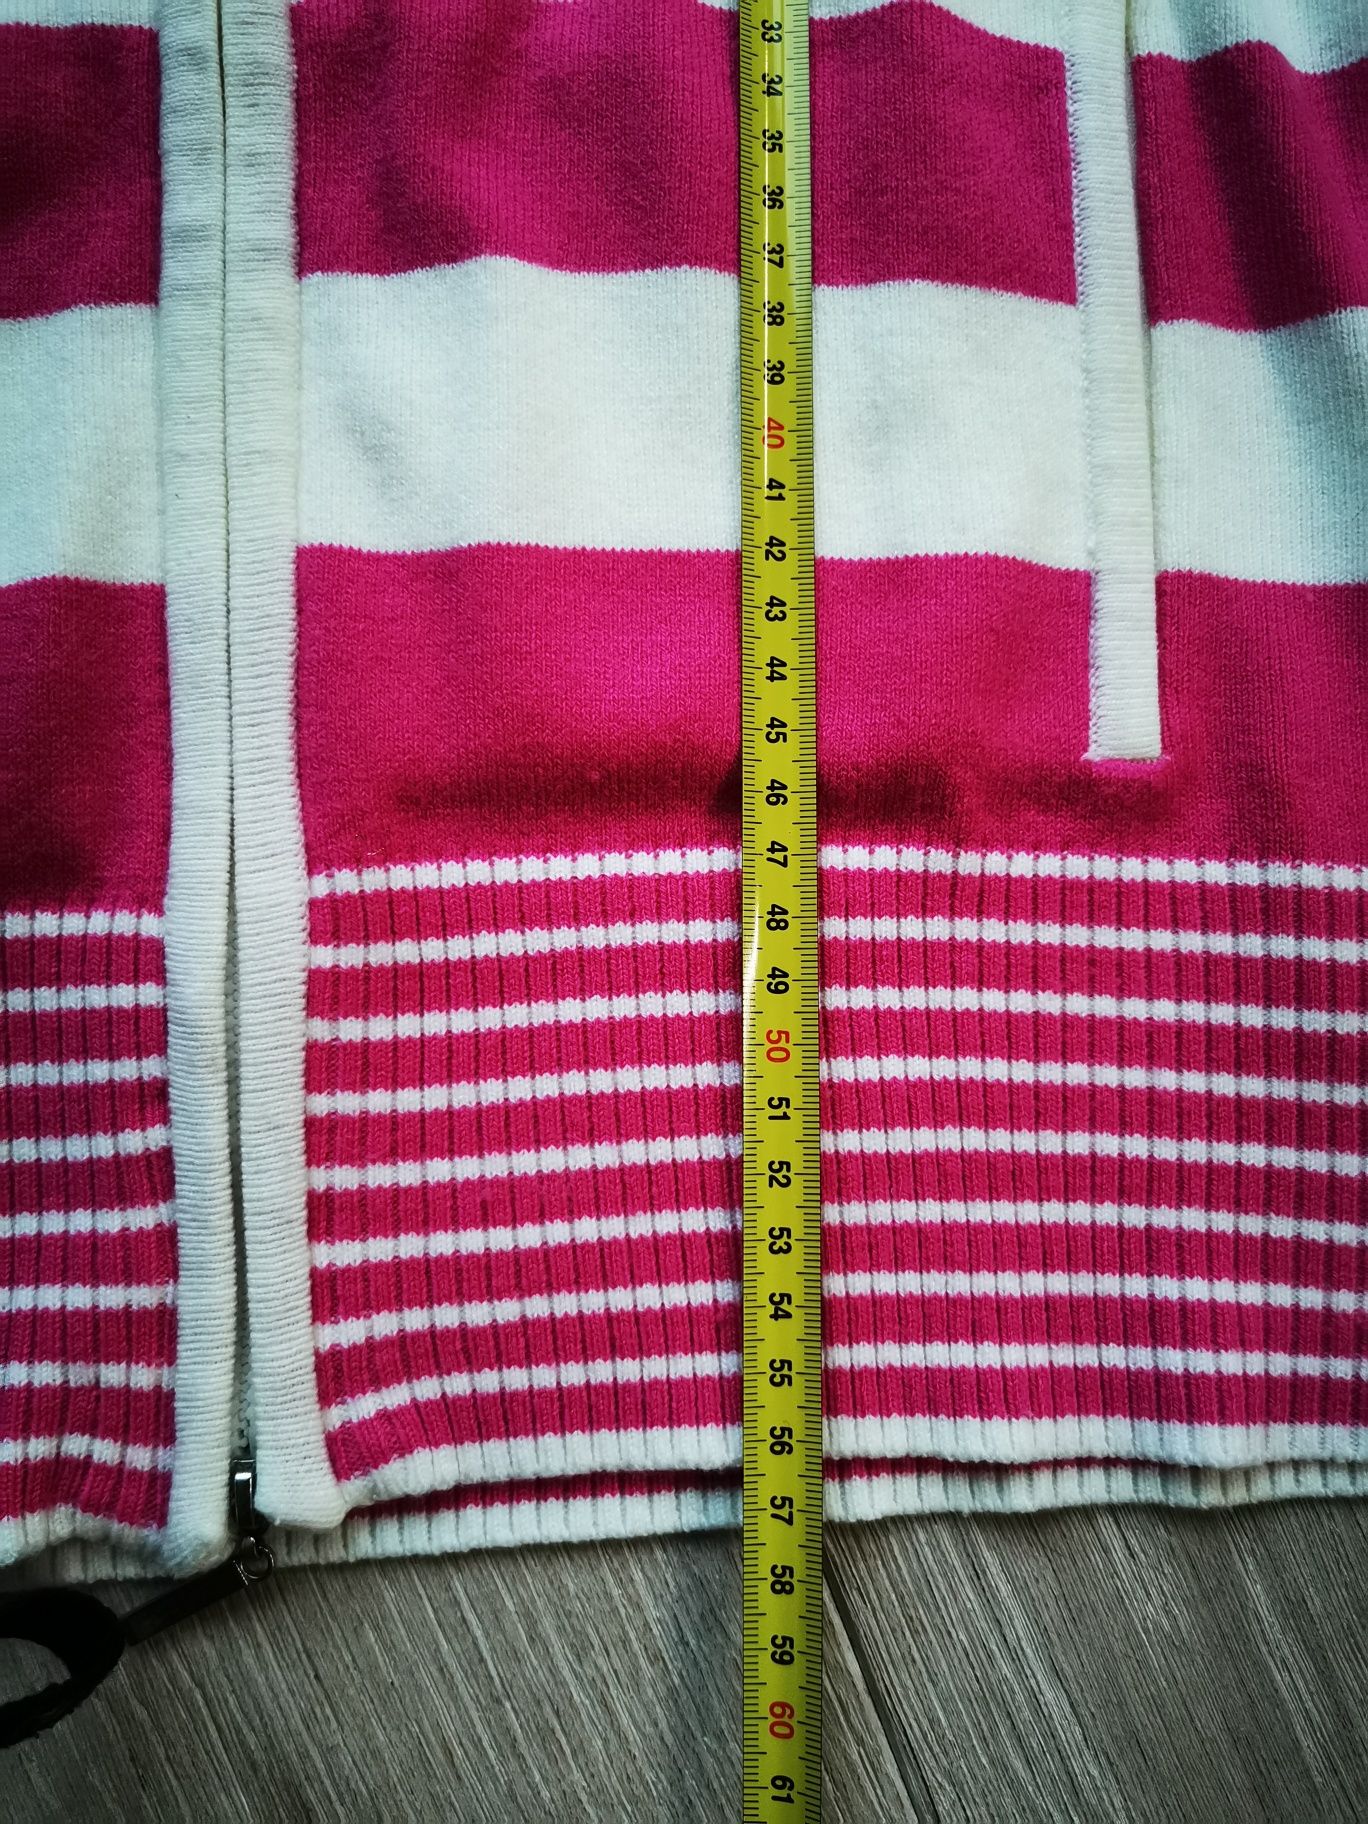 Sweter PRL w paski biało różowe Pineappletree r. M